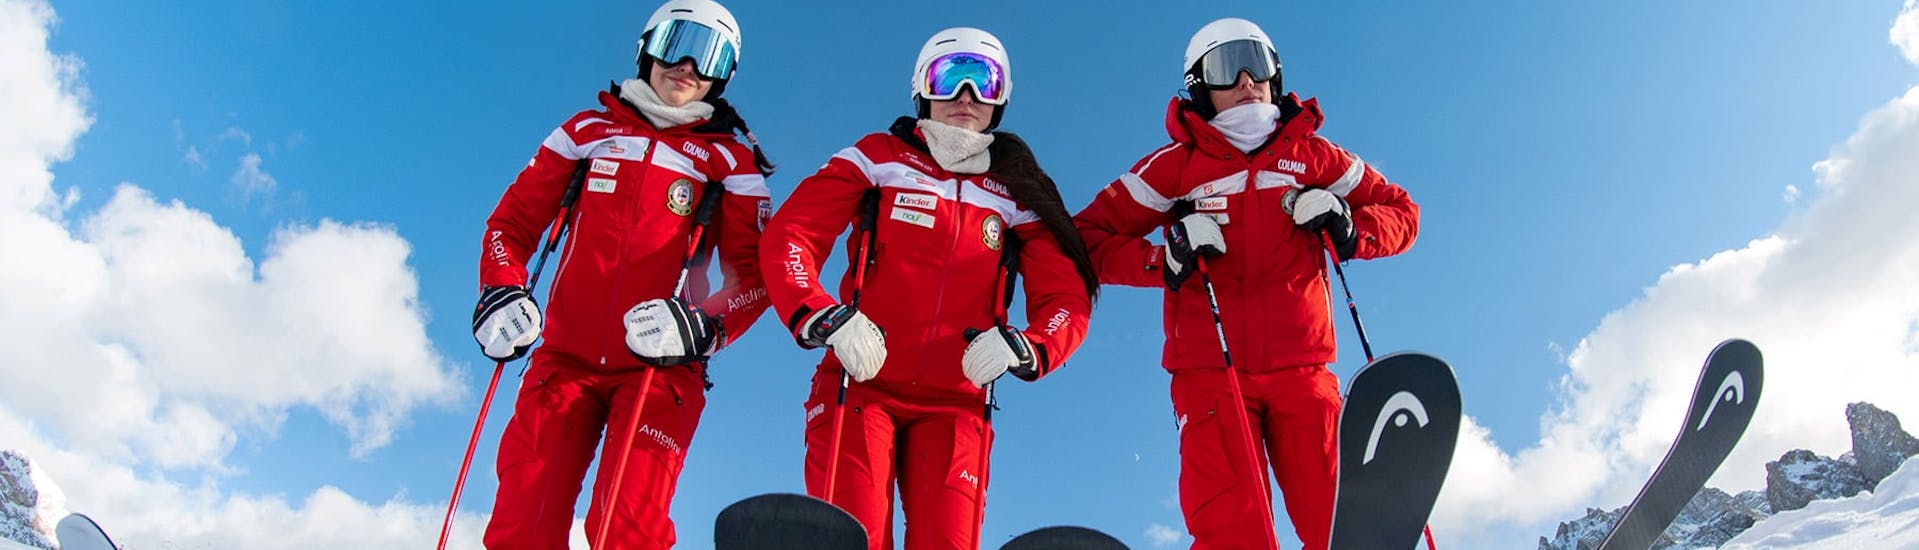 Maestri di sci pronti ad iniziare una delle lezioni di sci per ragazzi per sciatori esperti a Selva di Val Gardena.